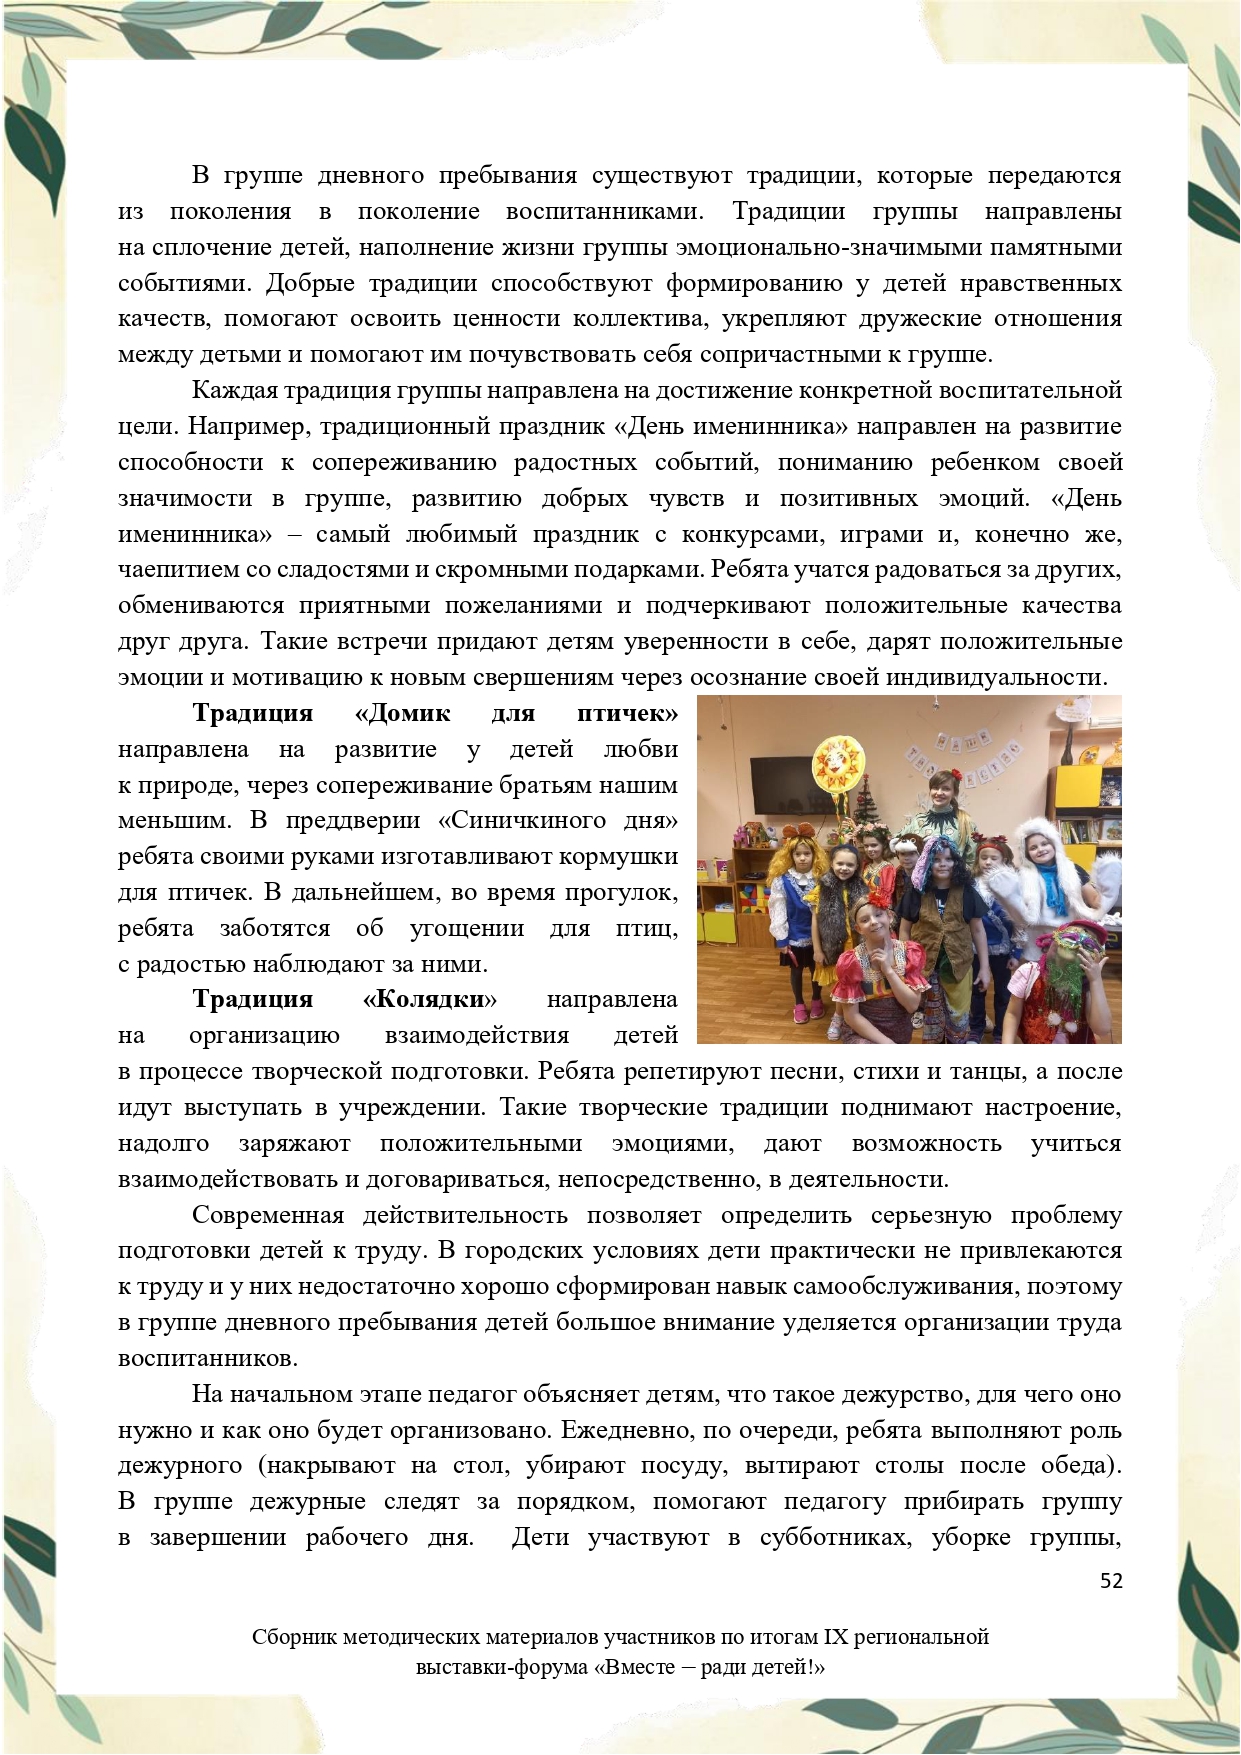 Sbornik_metodicheskikh_materialov_uchastnikov_IX_regionalnoy_vystavki-foruma_Vmeste__radi_detey_33__2023_page-0052